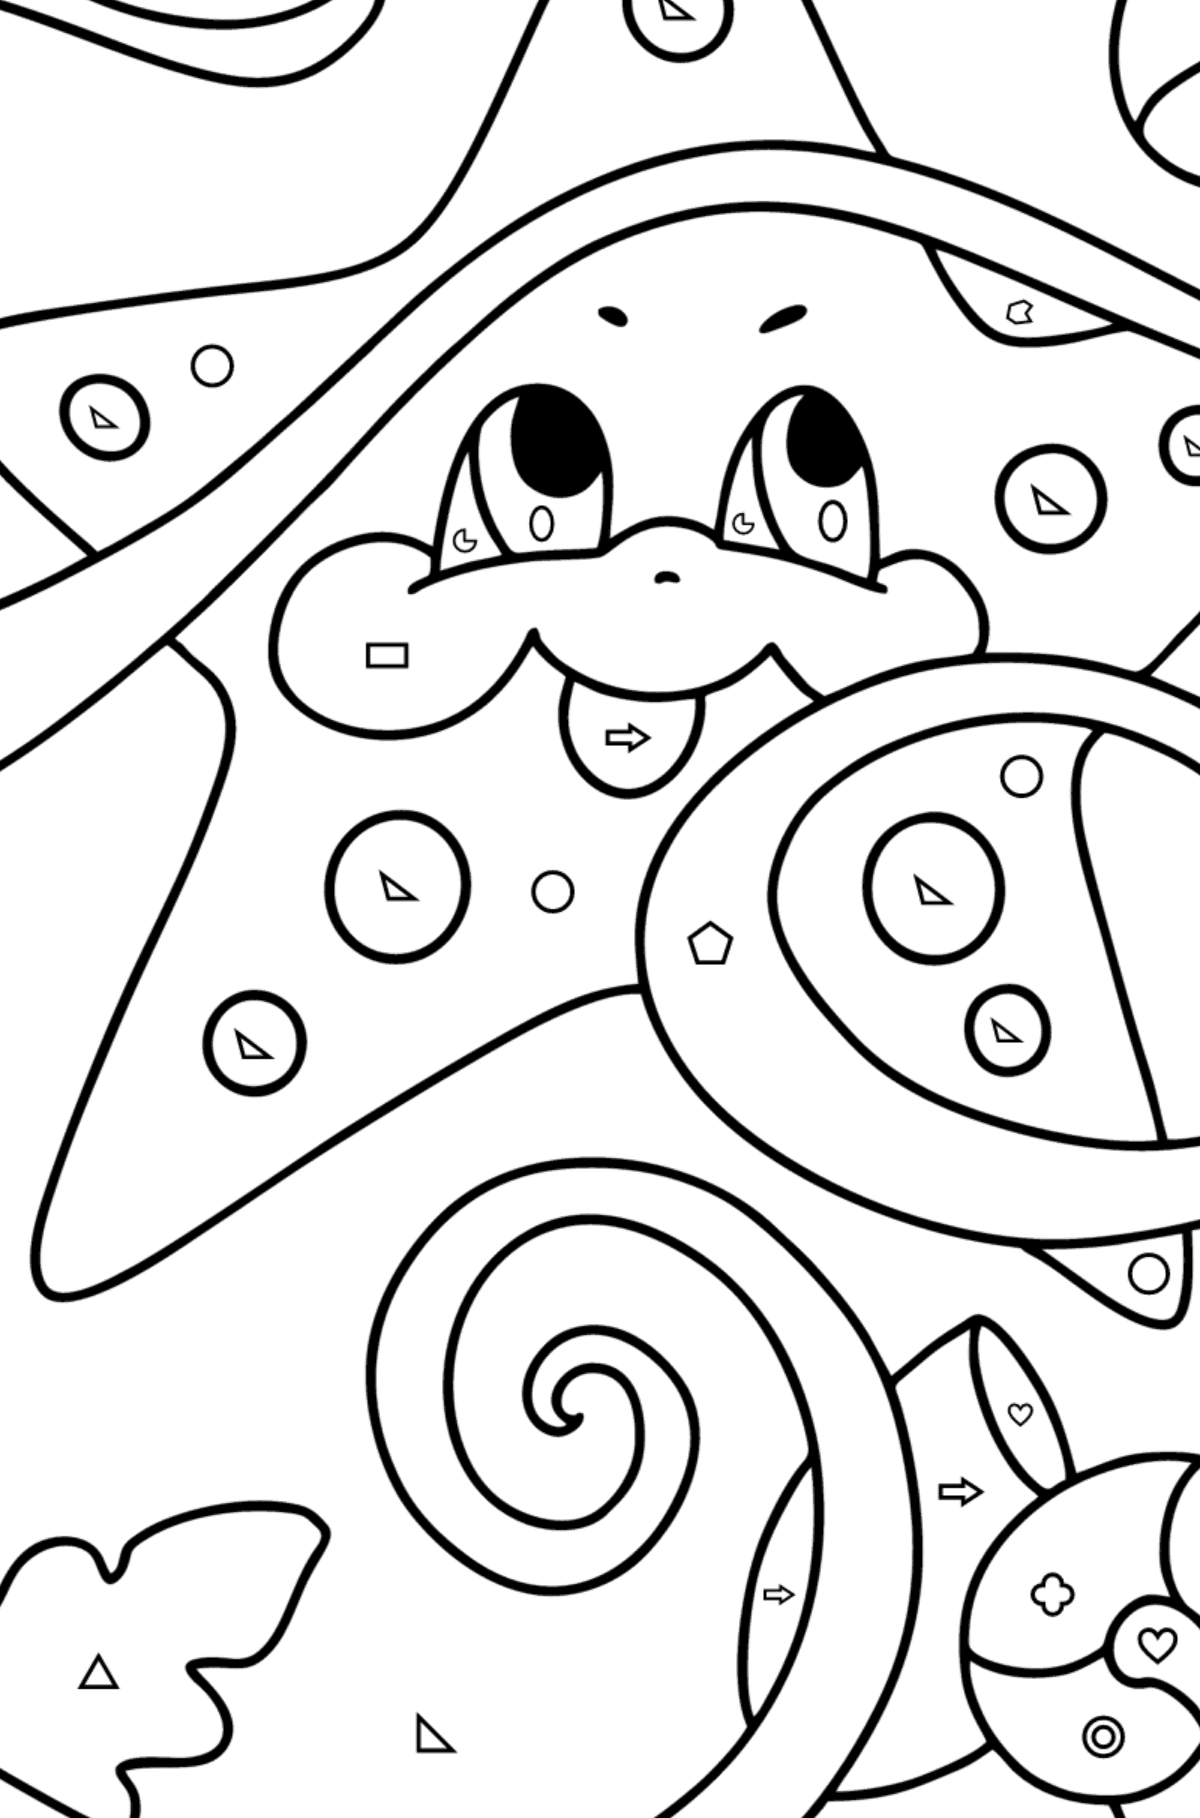 Disegno di Piccola stella marina da colorare - Colorare per forme geometriche per bambini